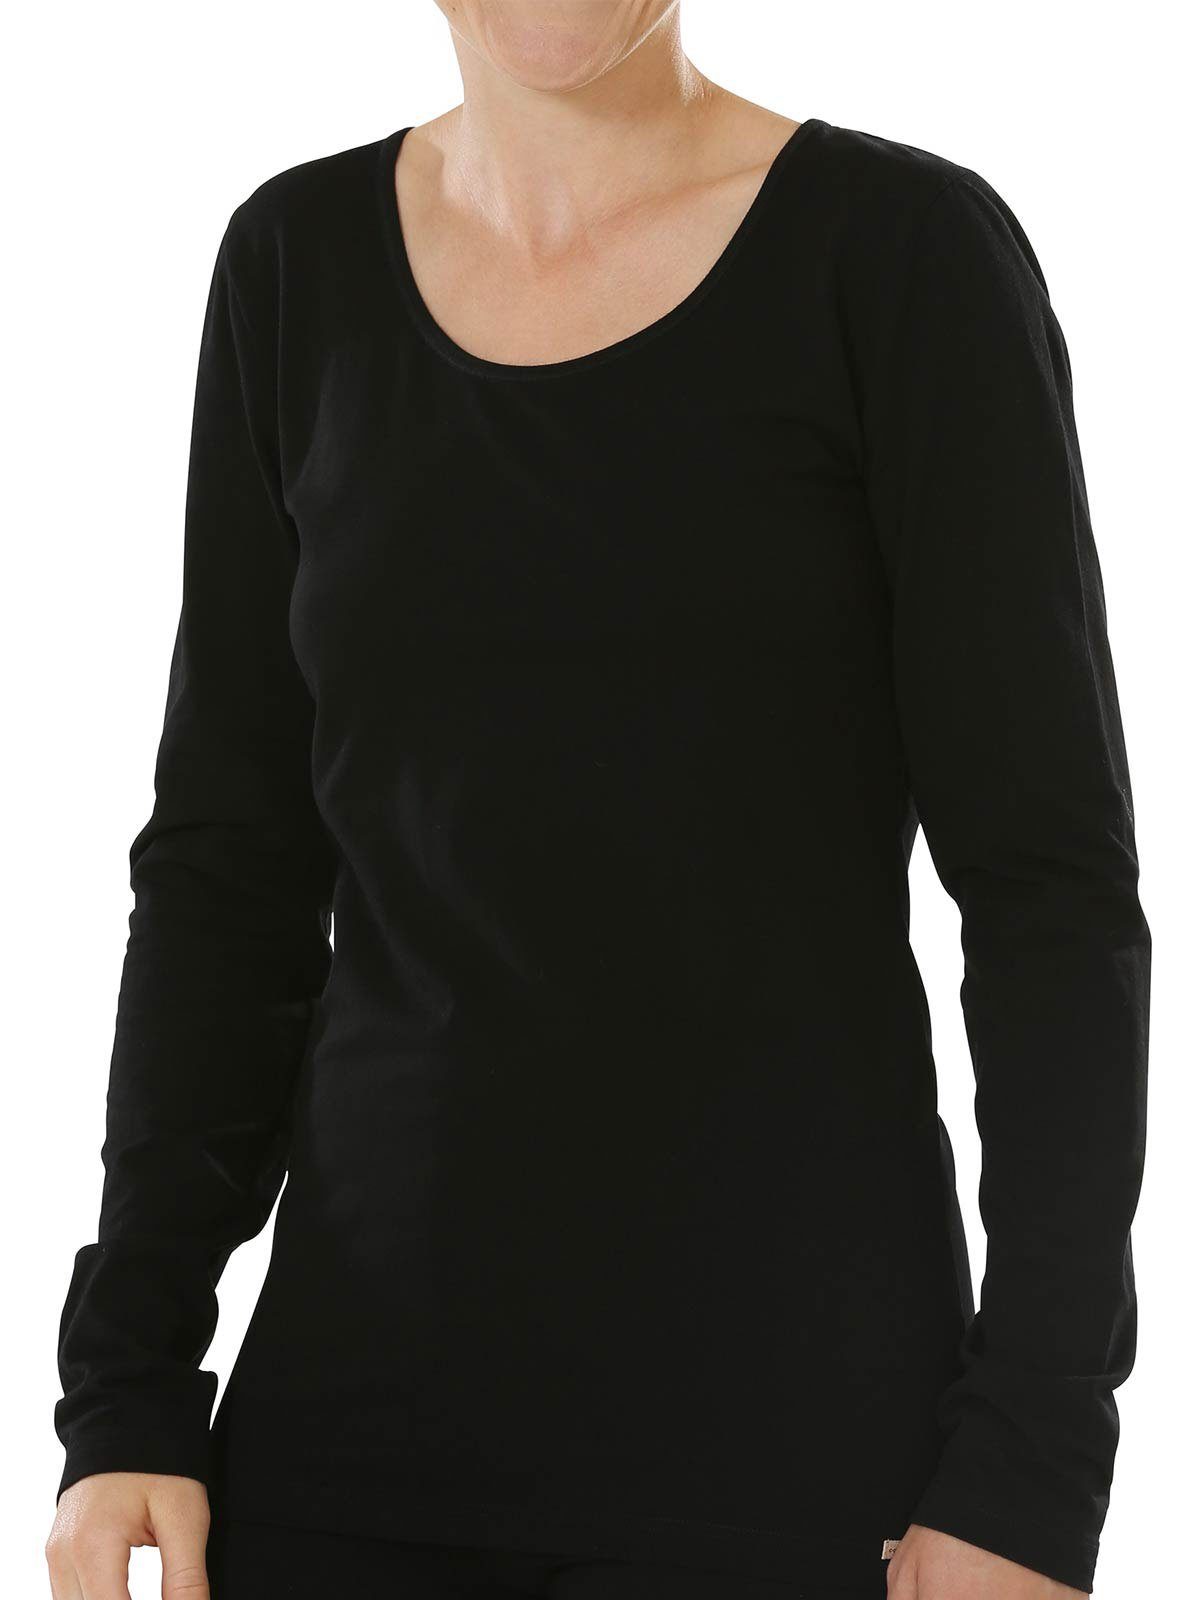 Langarm 2er Vegan Baumwoll Unterziehshirt Shirt Damen Pack grau-melange-schwarz 2-St) COMAZO (Stück,